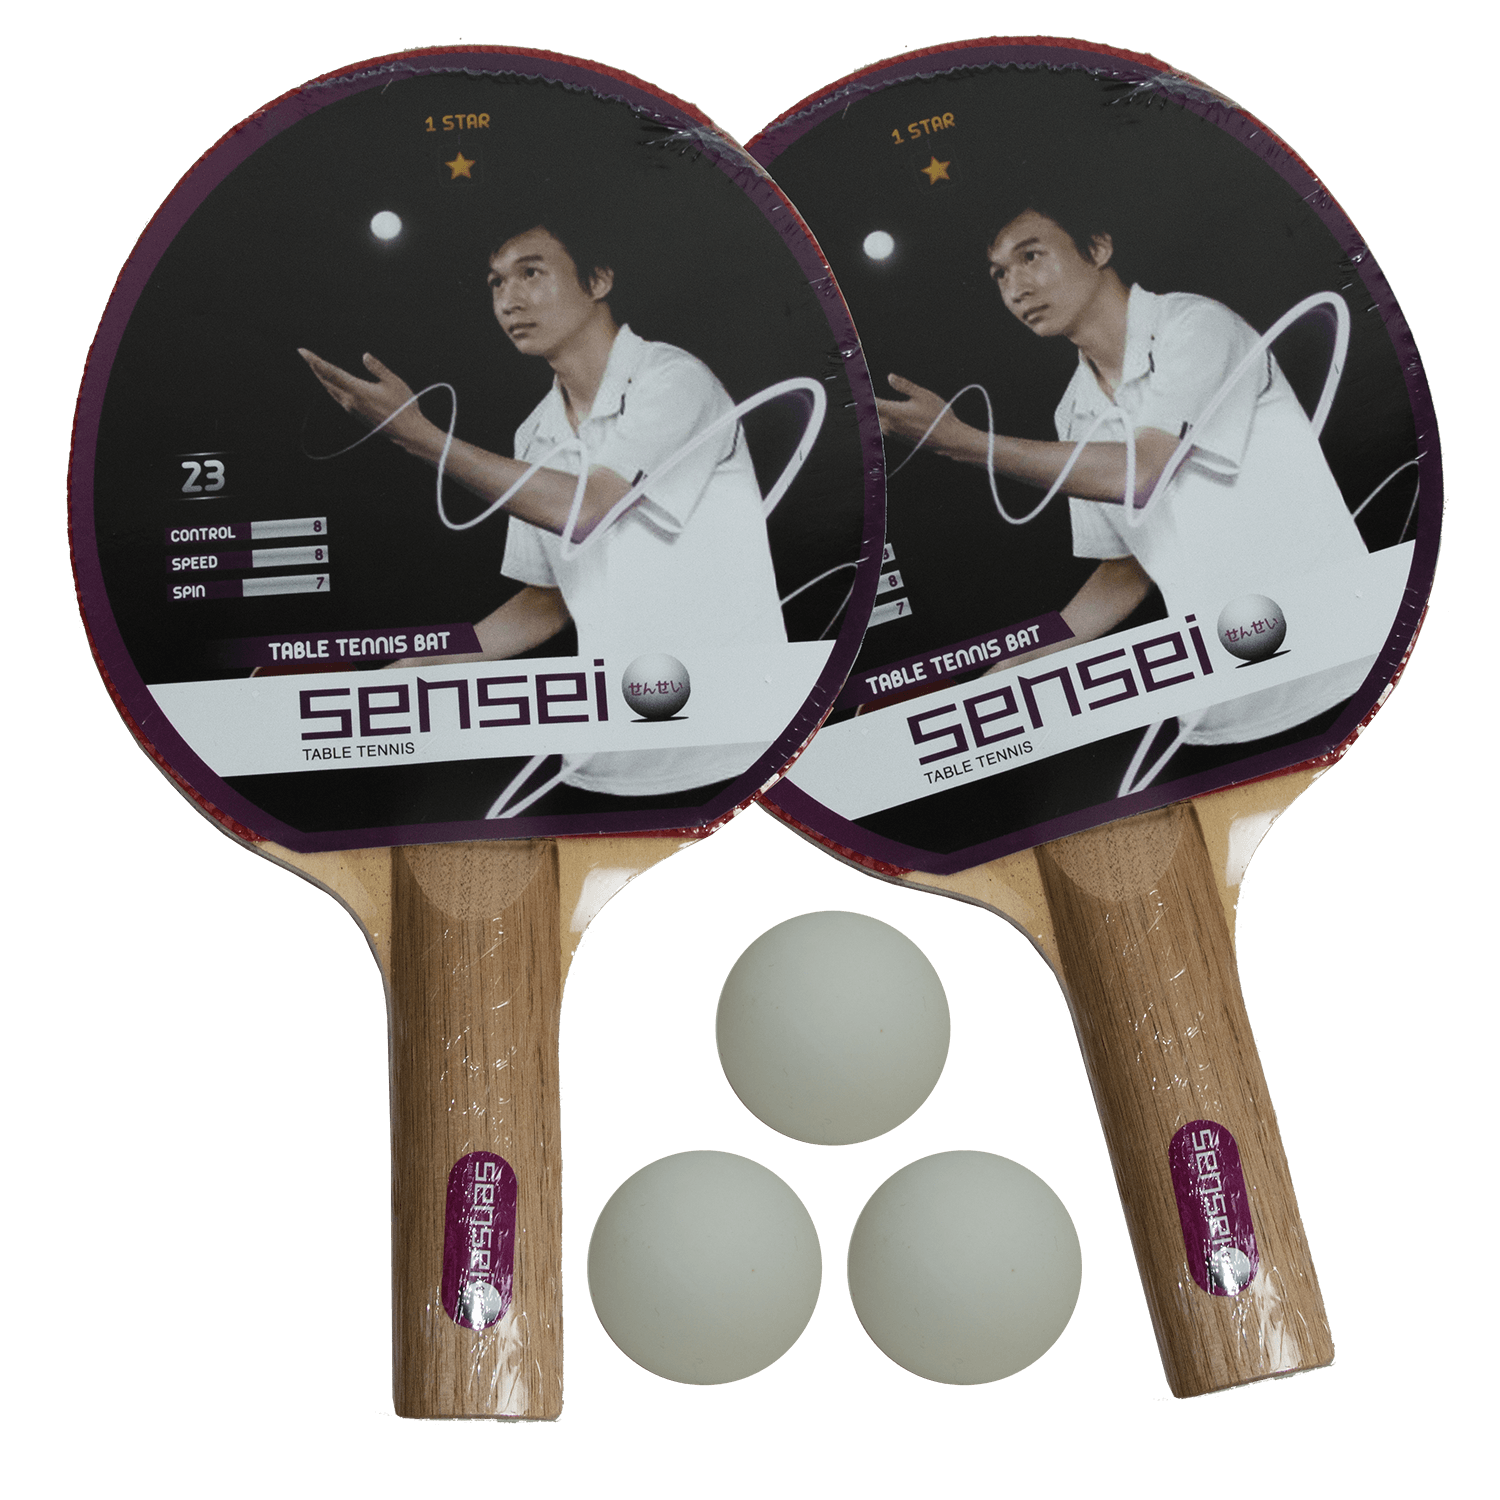 Set Ping Pong Sensei® 2 Paletas Tenis De Mesa 3 Pelotas 